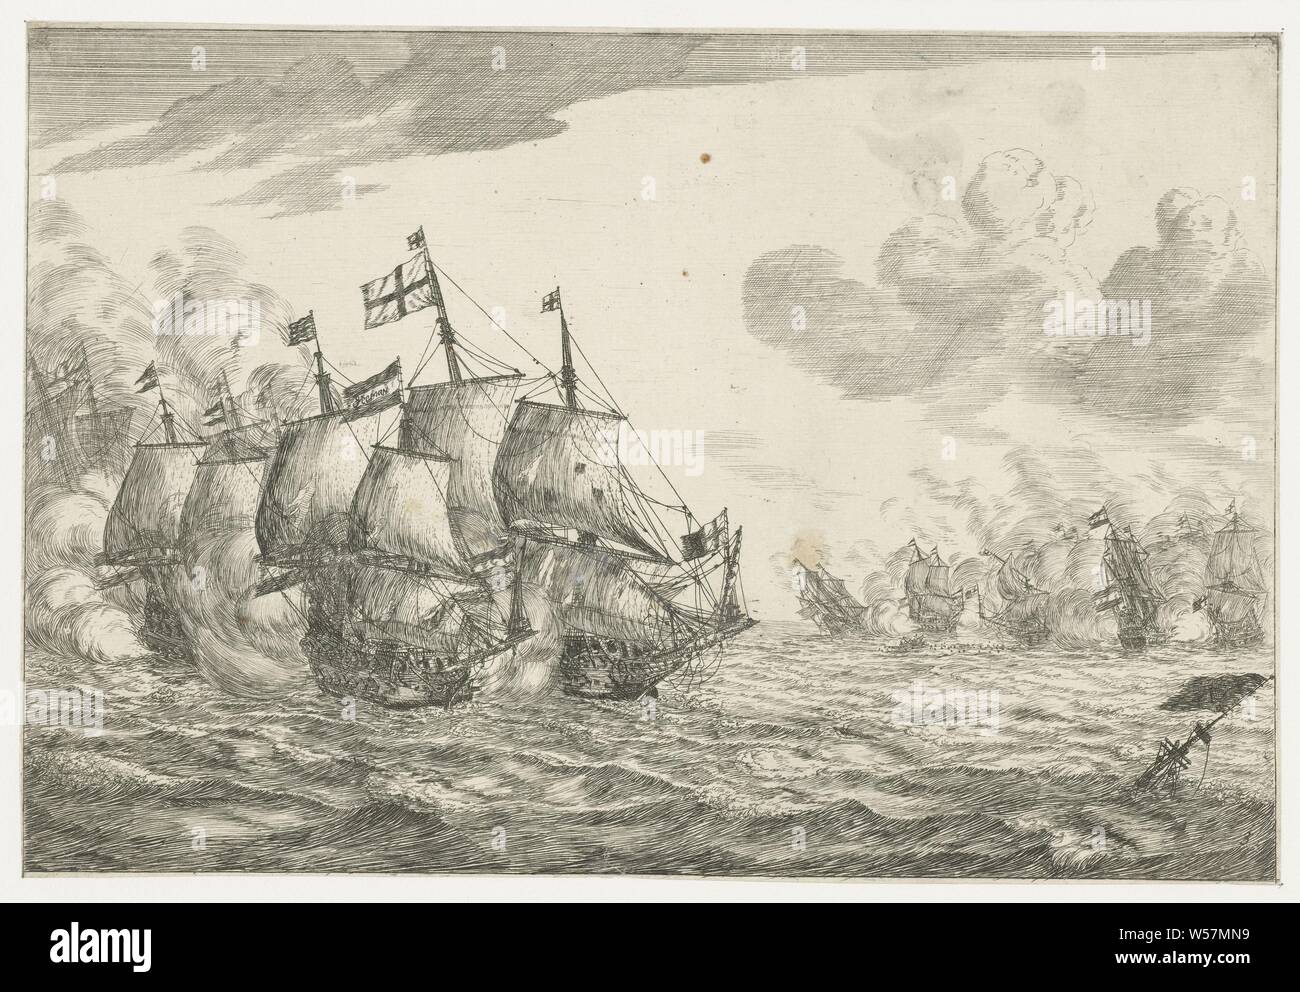 Bataille navale nouveau navire bataillon (titre de la série), deux grosses  batailles entre les navires néerlandais et l'anglais., Reinier Nooms  (mentionné sur l'objet), Pays-Bas, 1652 - 1670, le papier, pointe sèche, h